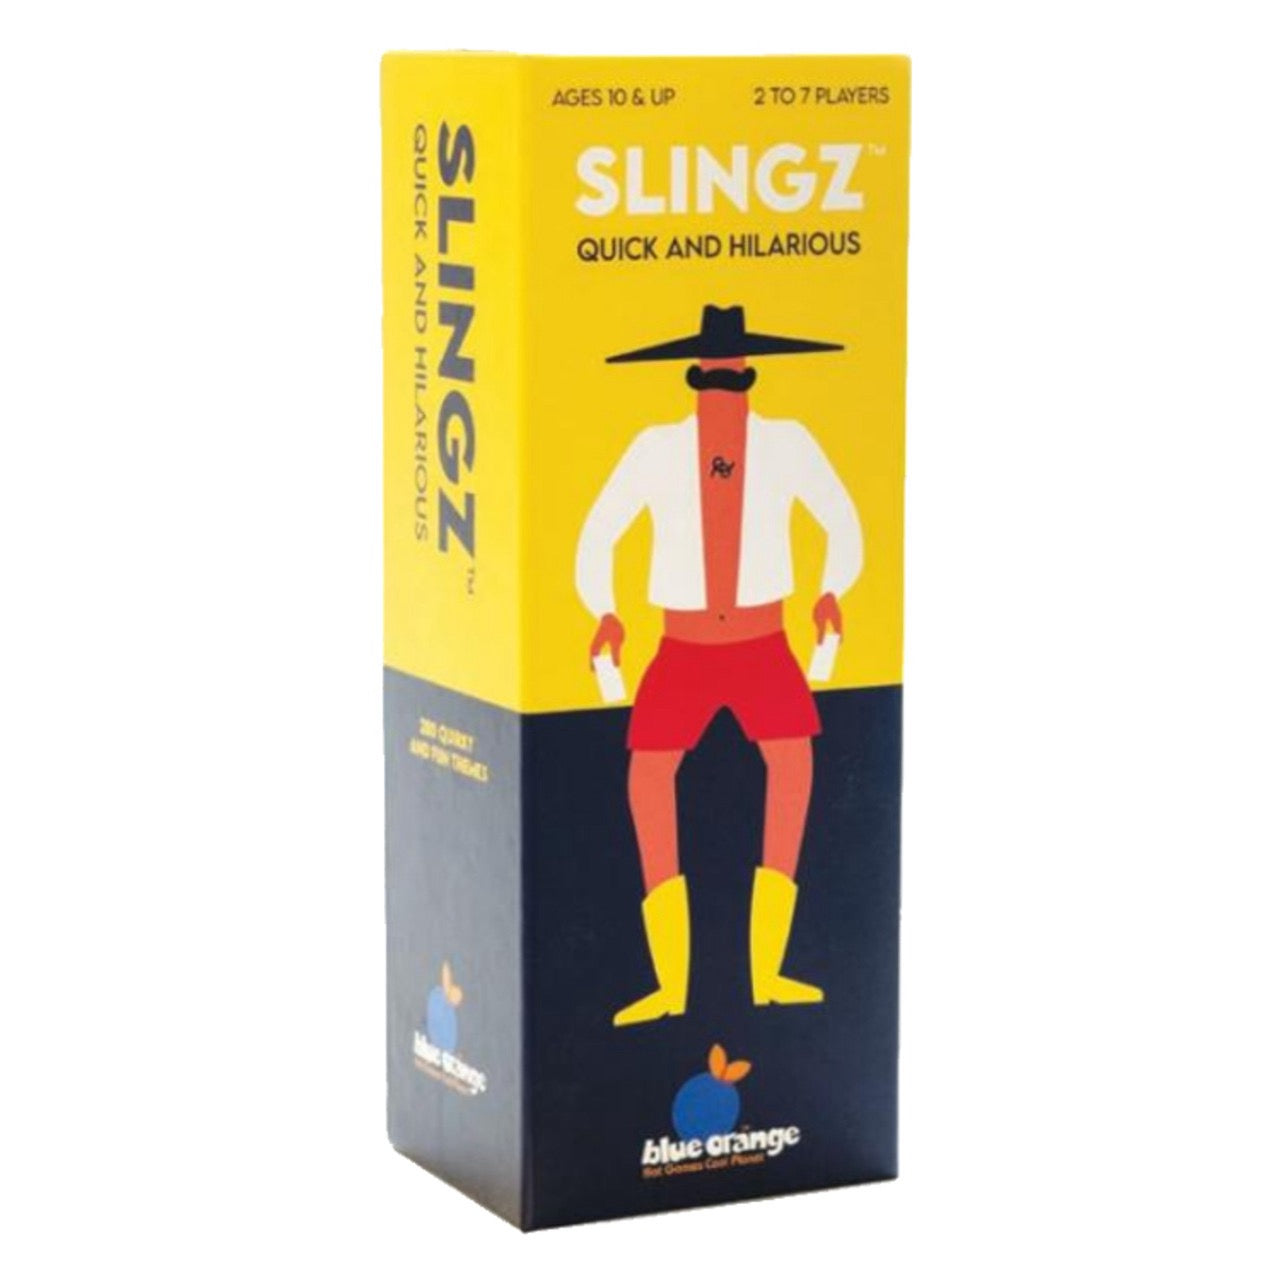 Slingz by Blue Orange #09082